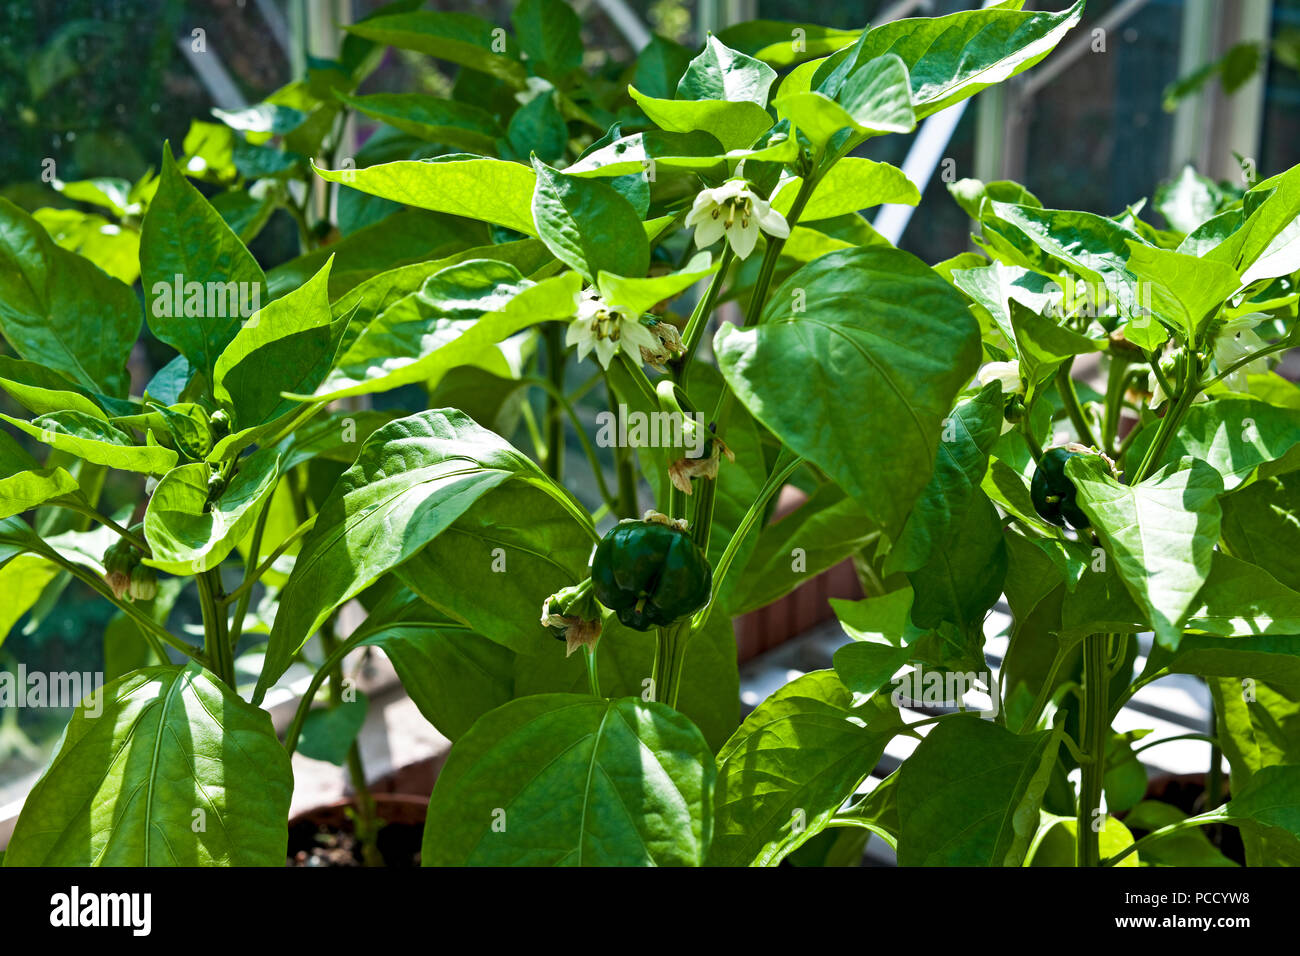 Gros plan de jeunes poivrons verts plantes poussant dans des pots en serre en été Angleterre Royaume-Uni Royaume-Uni Grande-Bretagne Banque D'Images